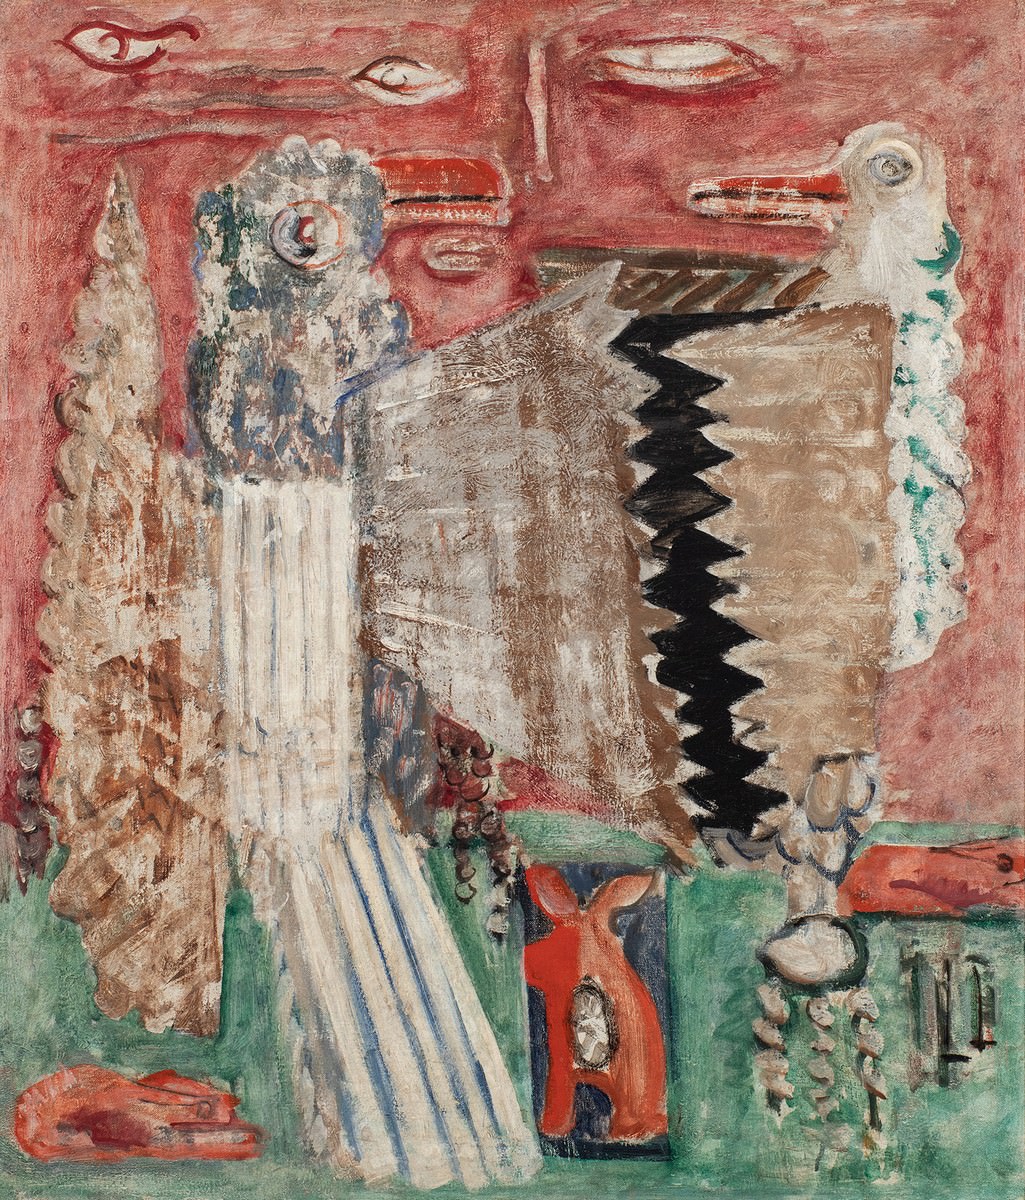 Feige. 6 - Komposition, 1941-42, Mark Rothko, Öl auf Leinwand, 28 1/2 x 24 1/2 Zoll, 72,4 x 62,x cm, unterzeichnet. Mit freundlicher Genehmigung von Michael Rosenfeld Gallery LLC, Nova Yorker, NY, USA.